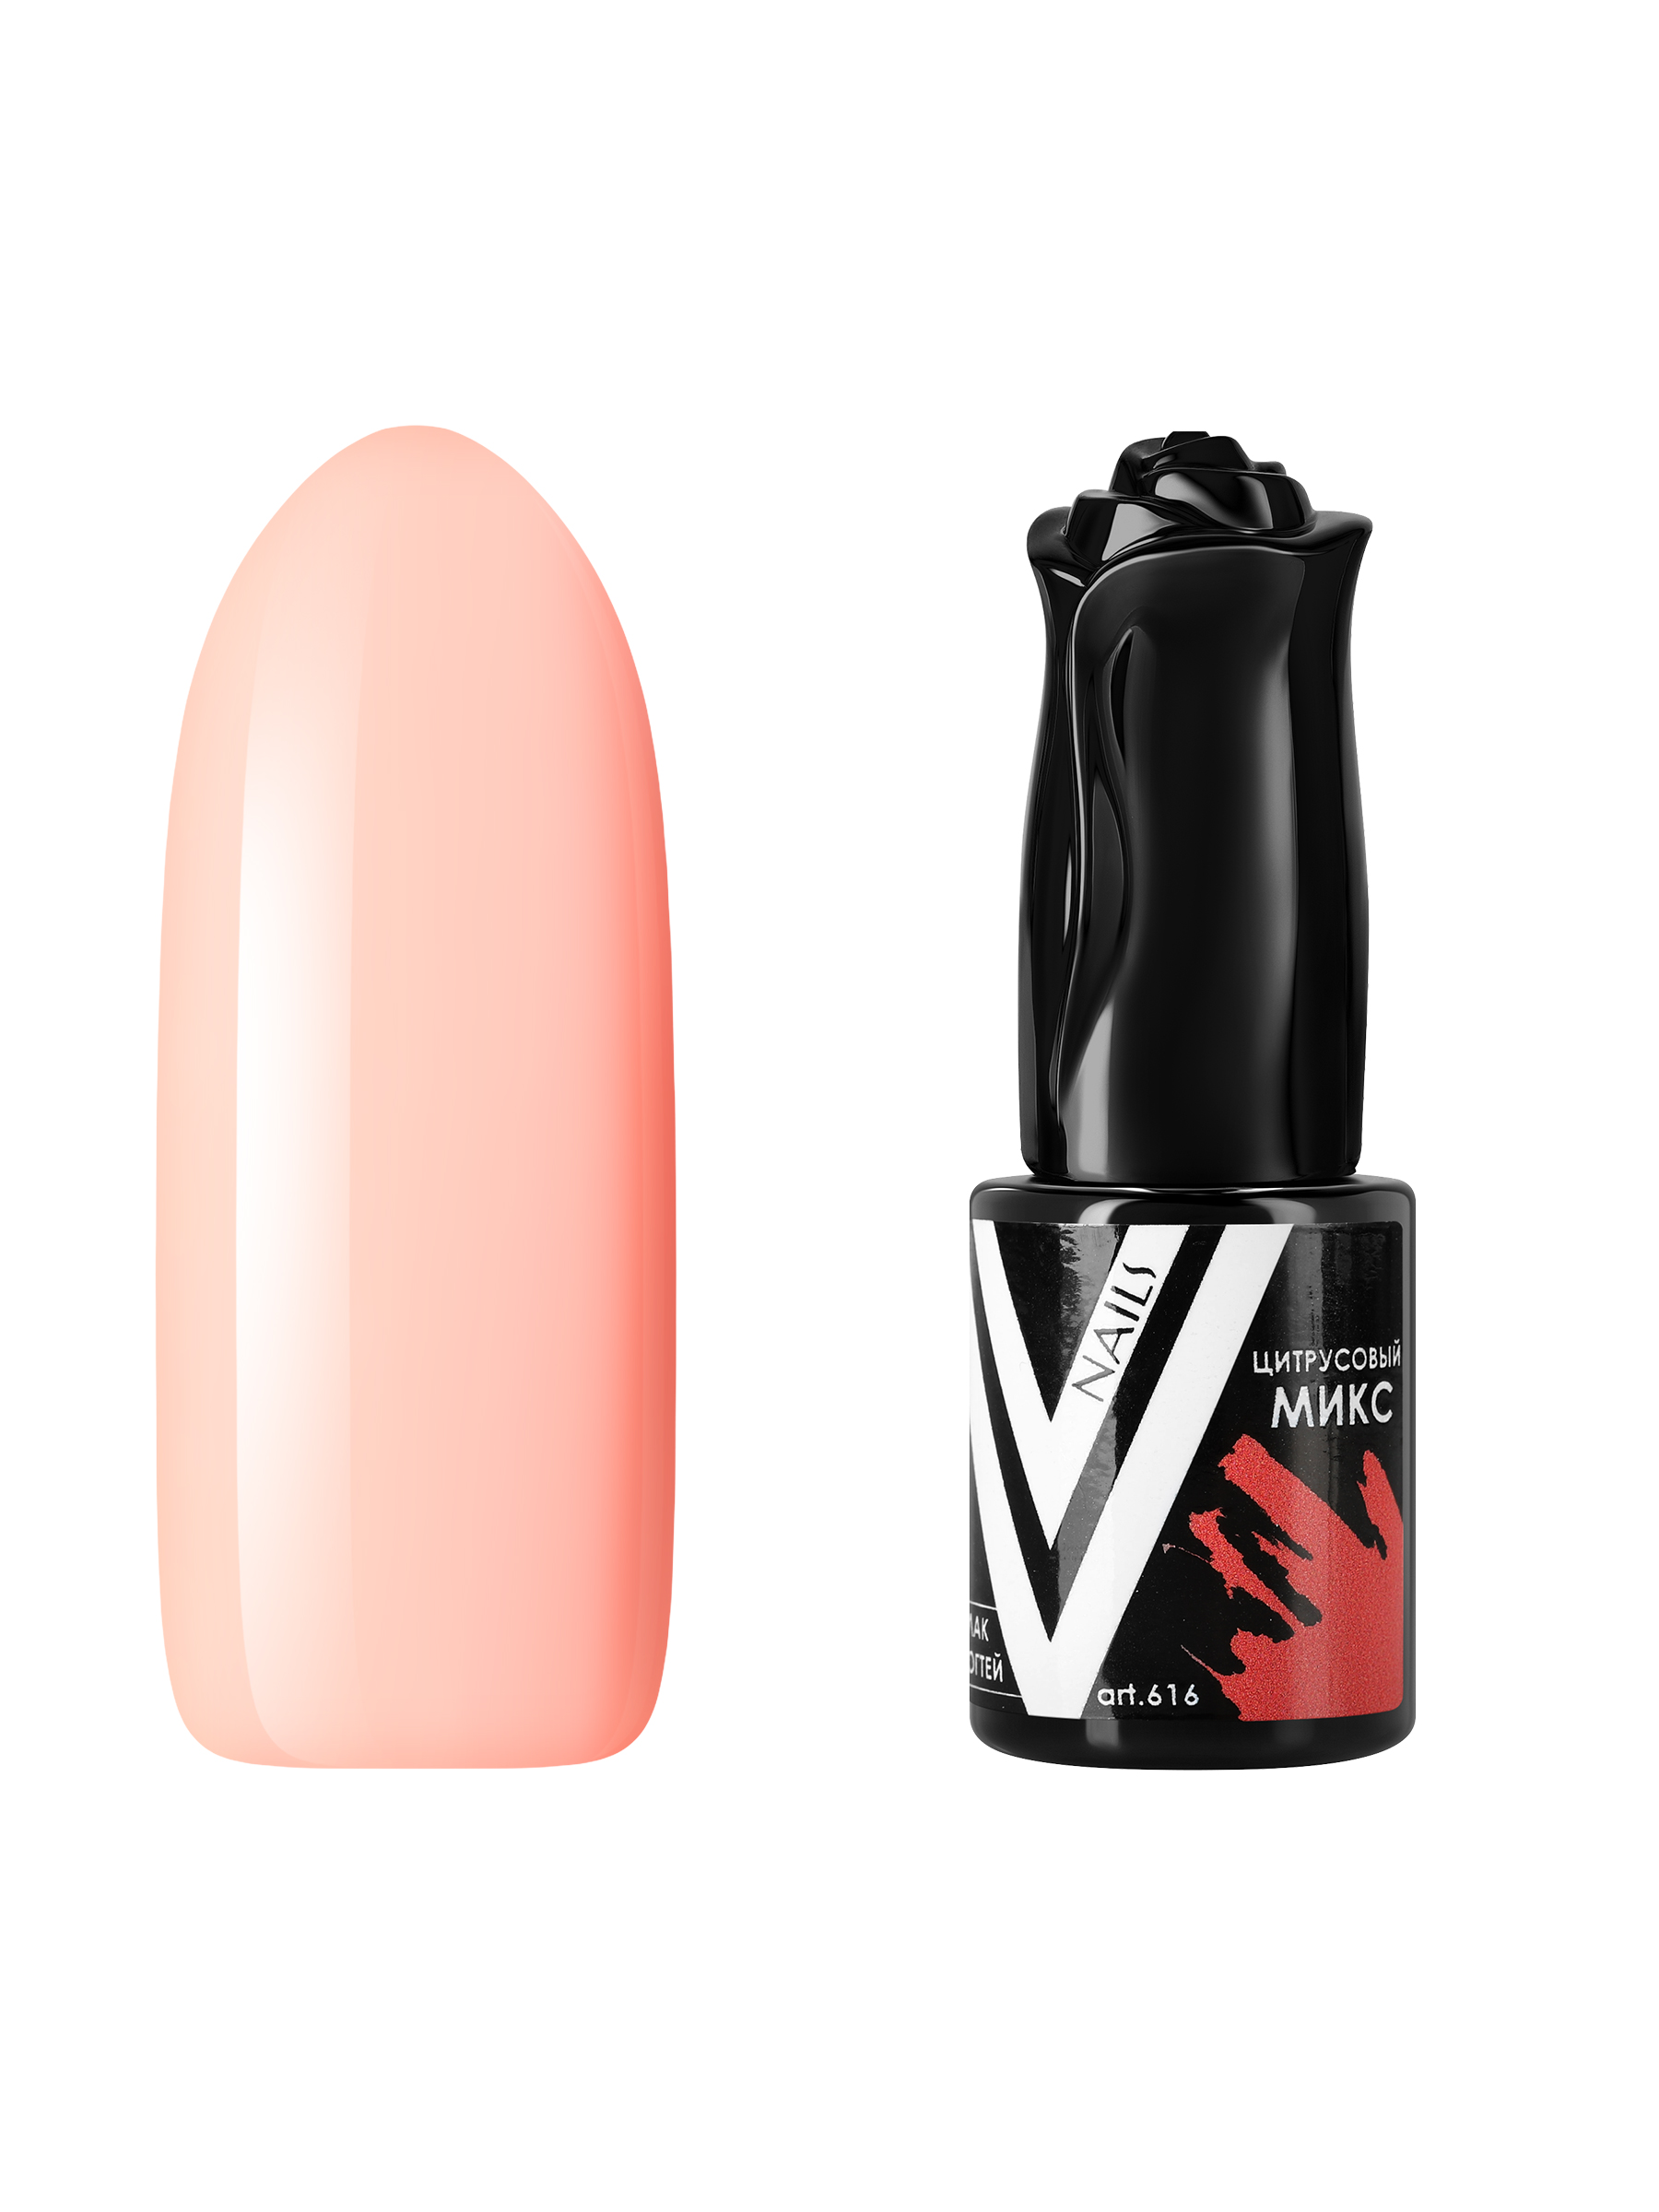 Гель-лак для ногтей Vogue Nails плотный, самовыравнивающийся, светлый, бежевый, 10 мл пудра artdeco запасной блок 10 бежевый светлый